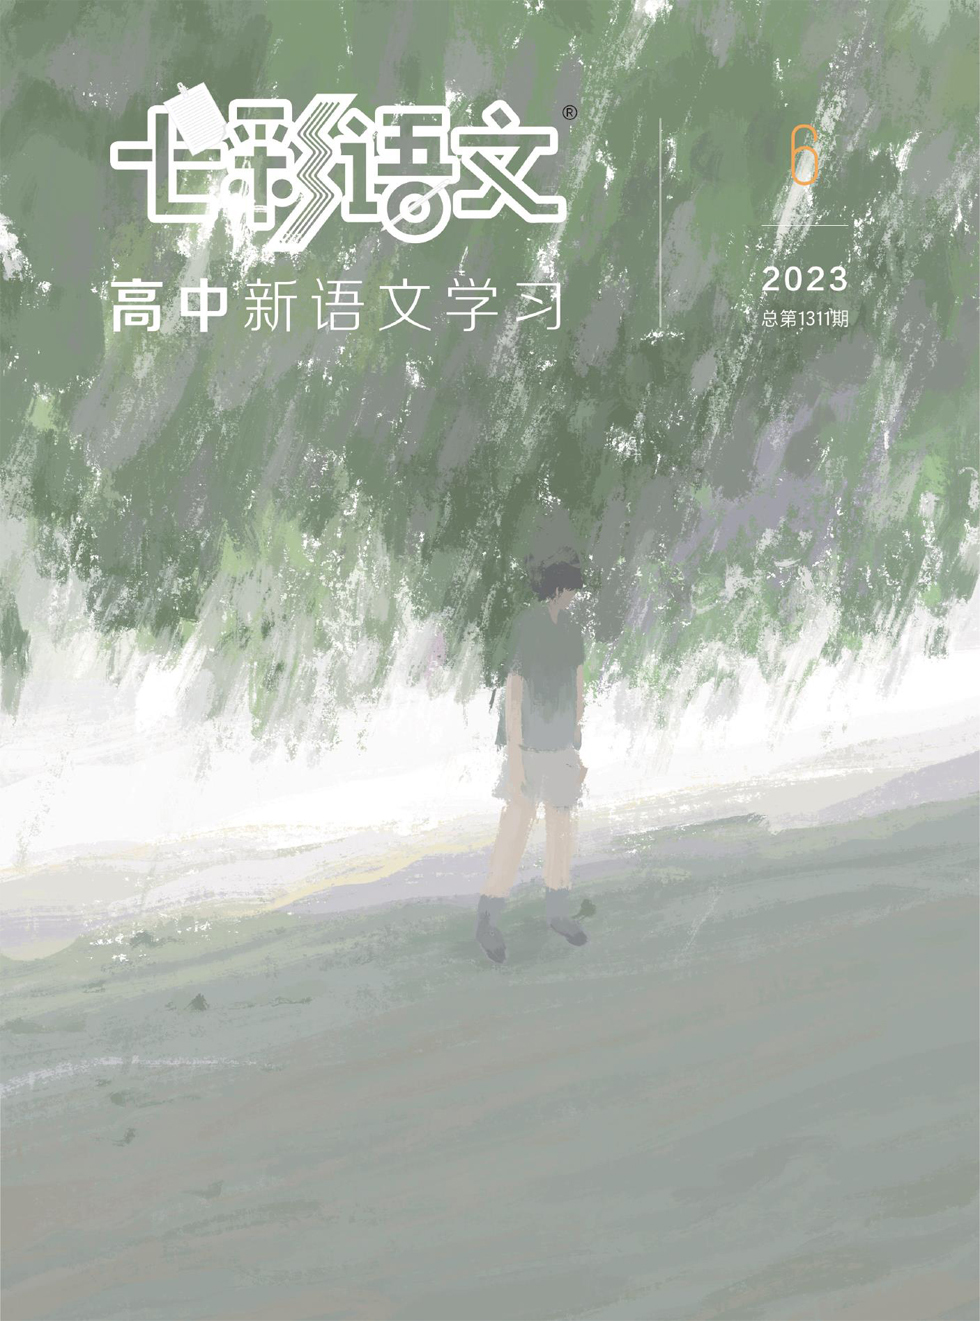 七彩语文·高中新语文学习杂志封面